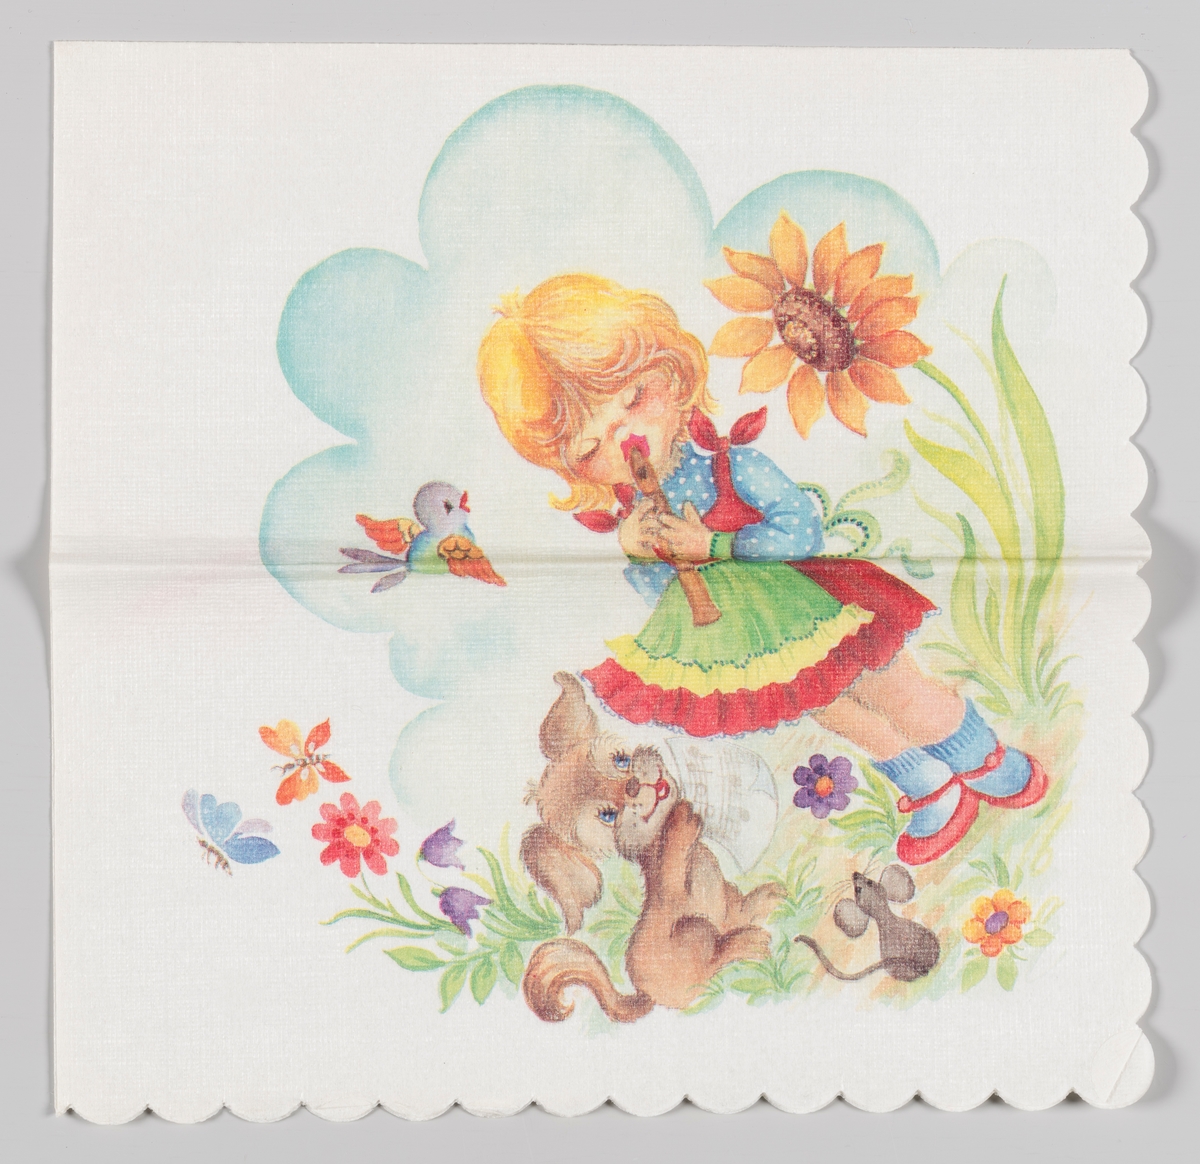 En jente spiller på fløyte med en liten hund, en mus og en fugl som publikum omgitt av blomster og sommerfugler og med en blå sky i bakgrunnen.